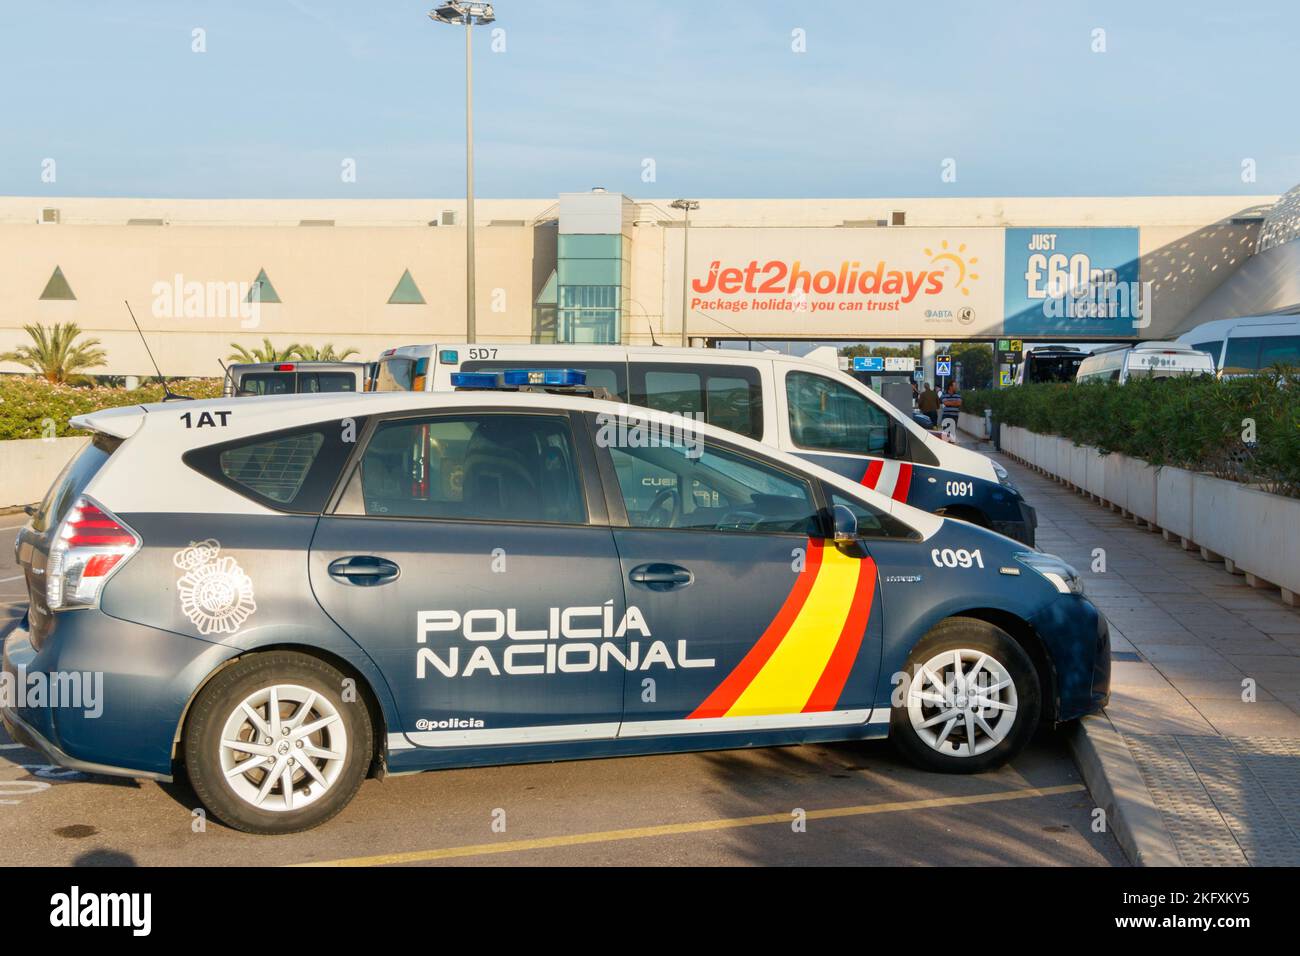 spanischer Polizeiwagen vor dem Terminal am Flughafen Palma mallorca spanien policia nacional Stockfoto